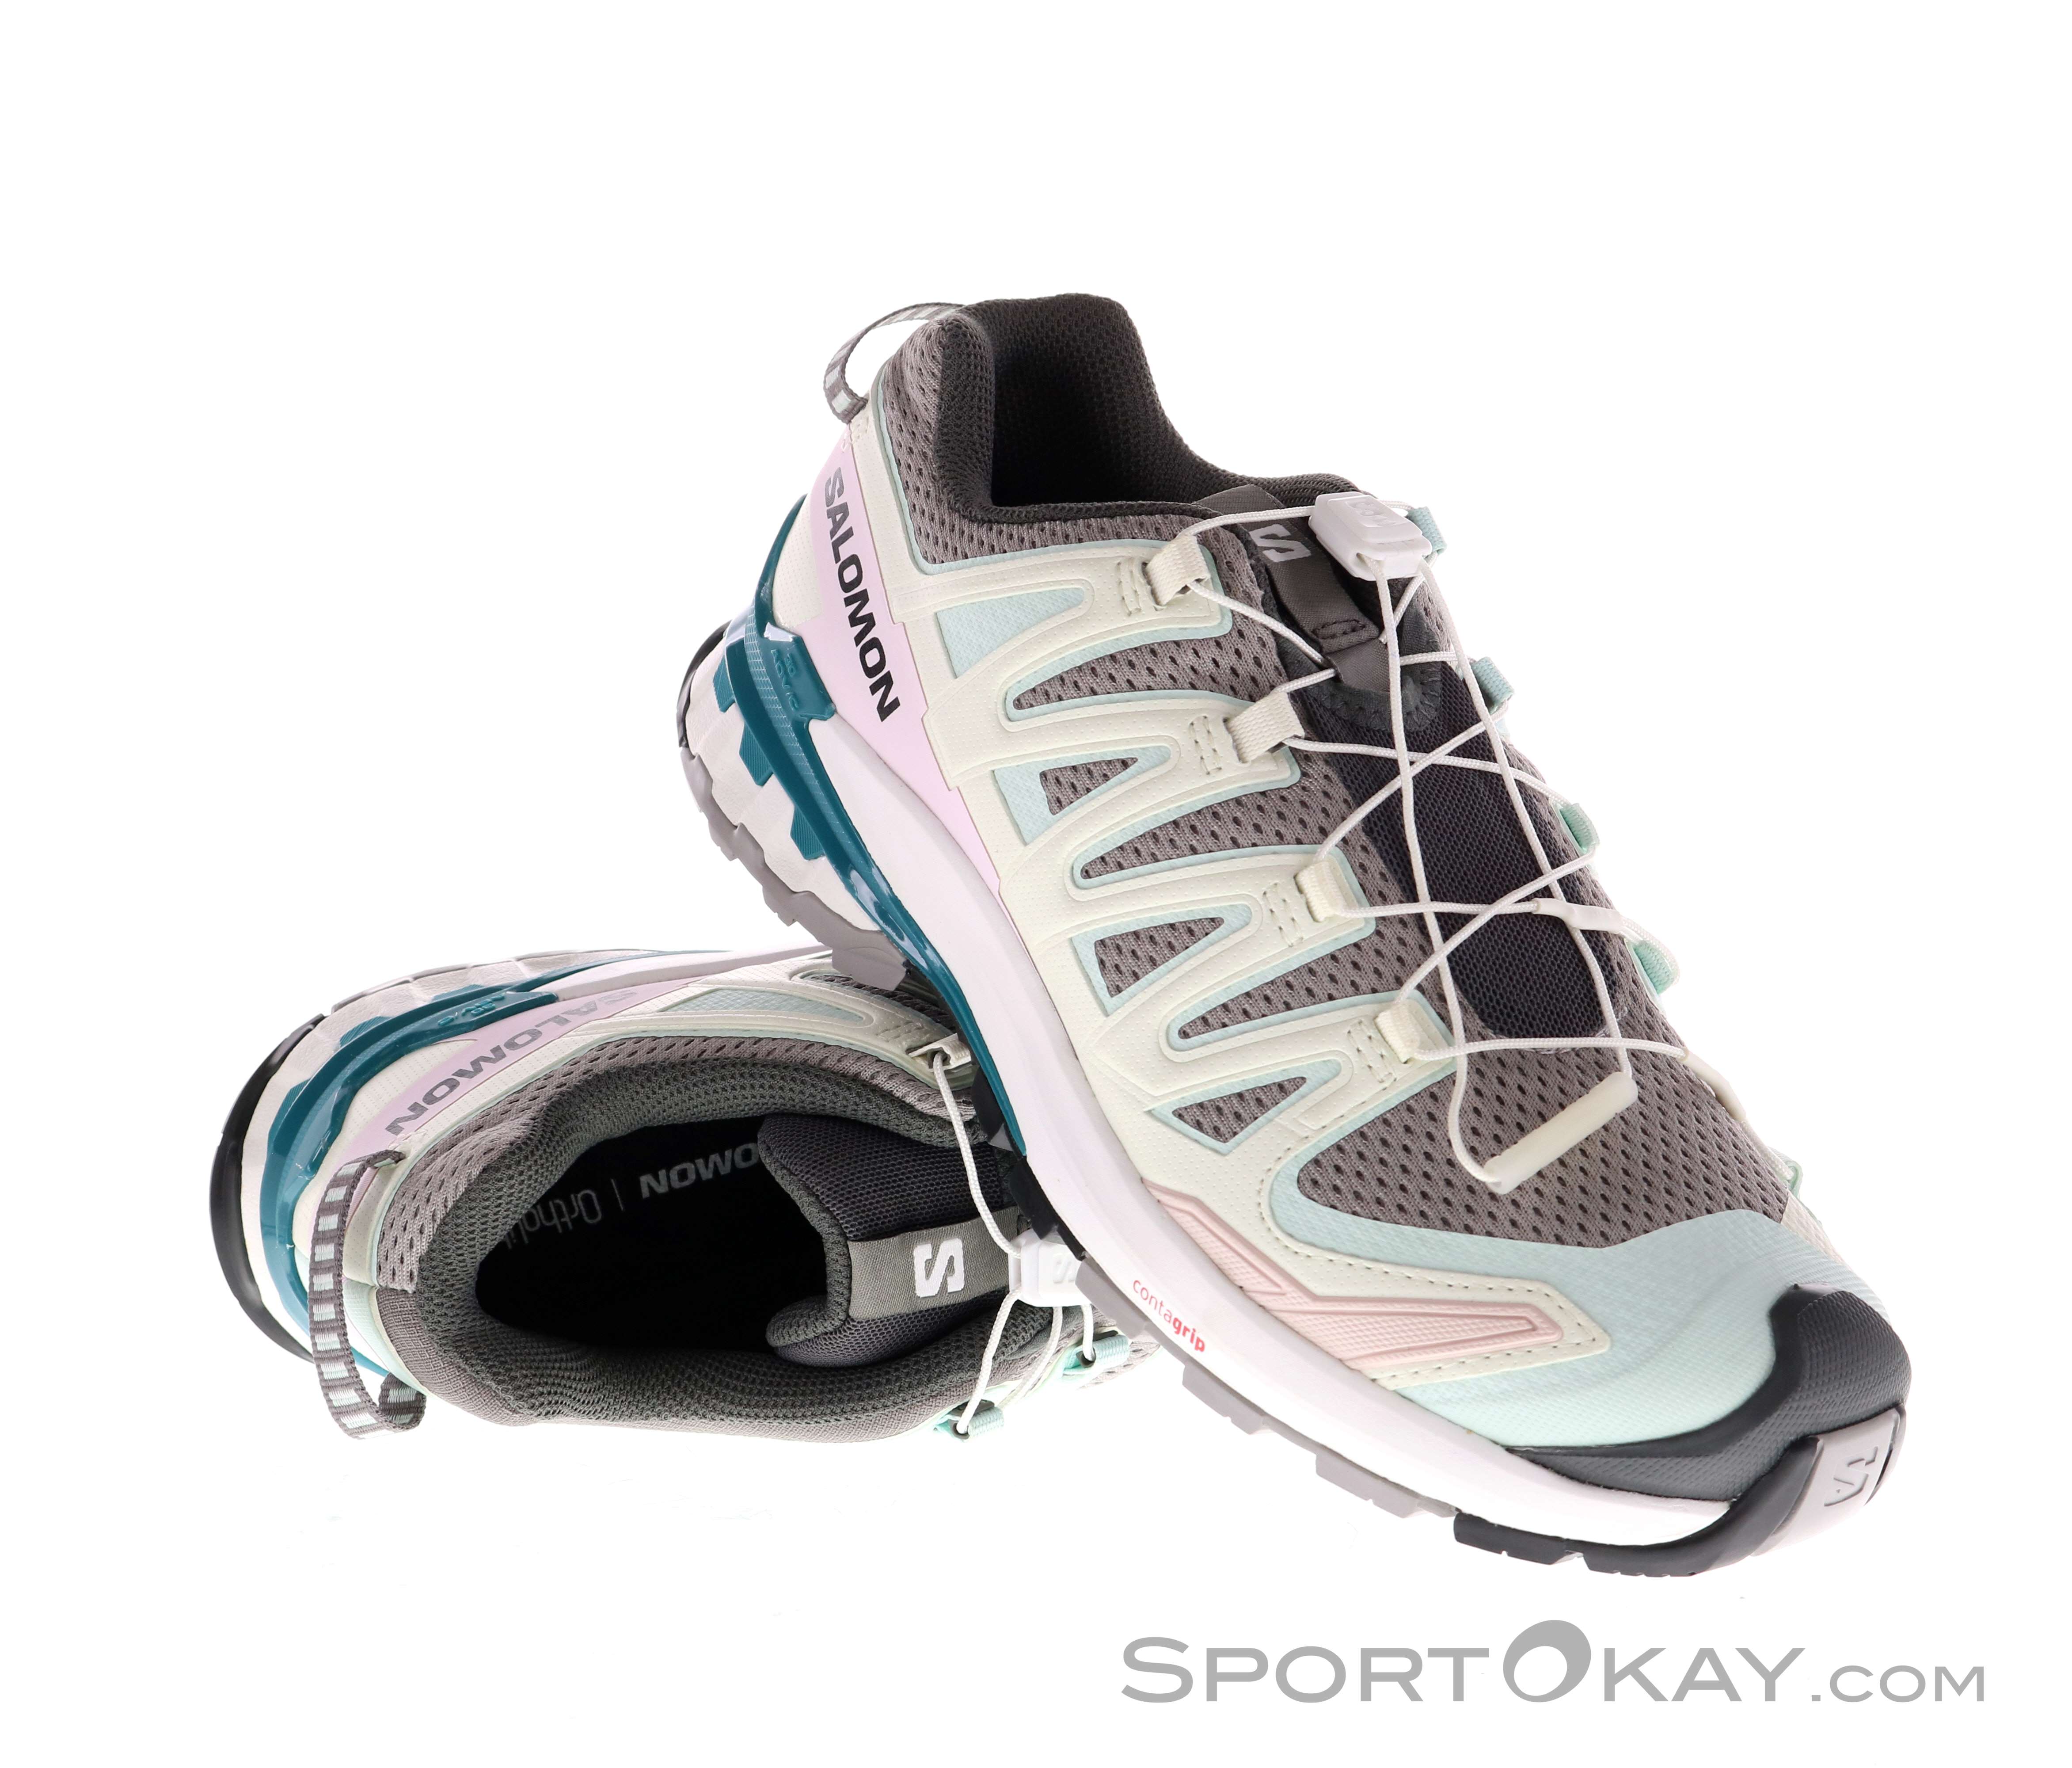 Salomon XA PRO 3D V9 Mujer Calzado trail running - Calzado de